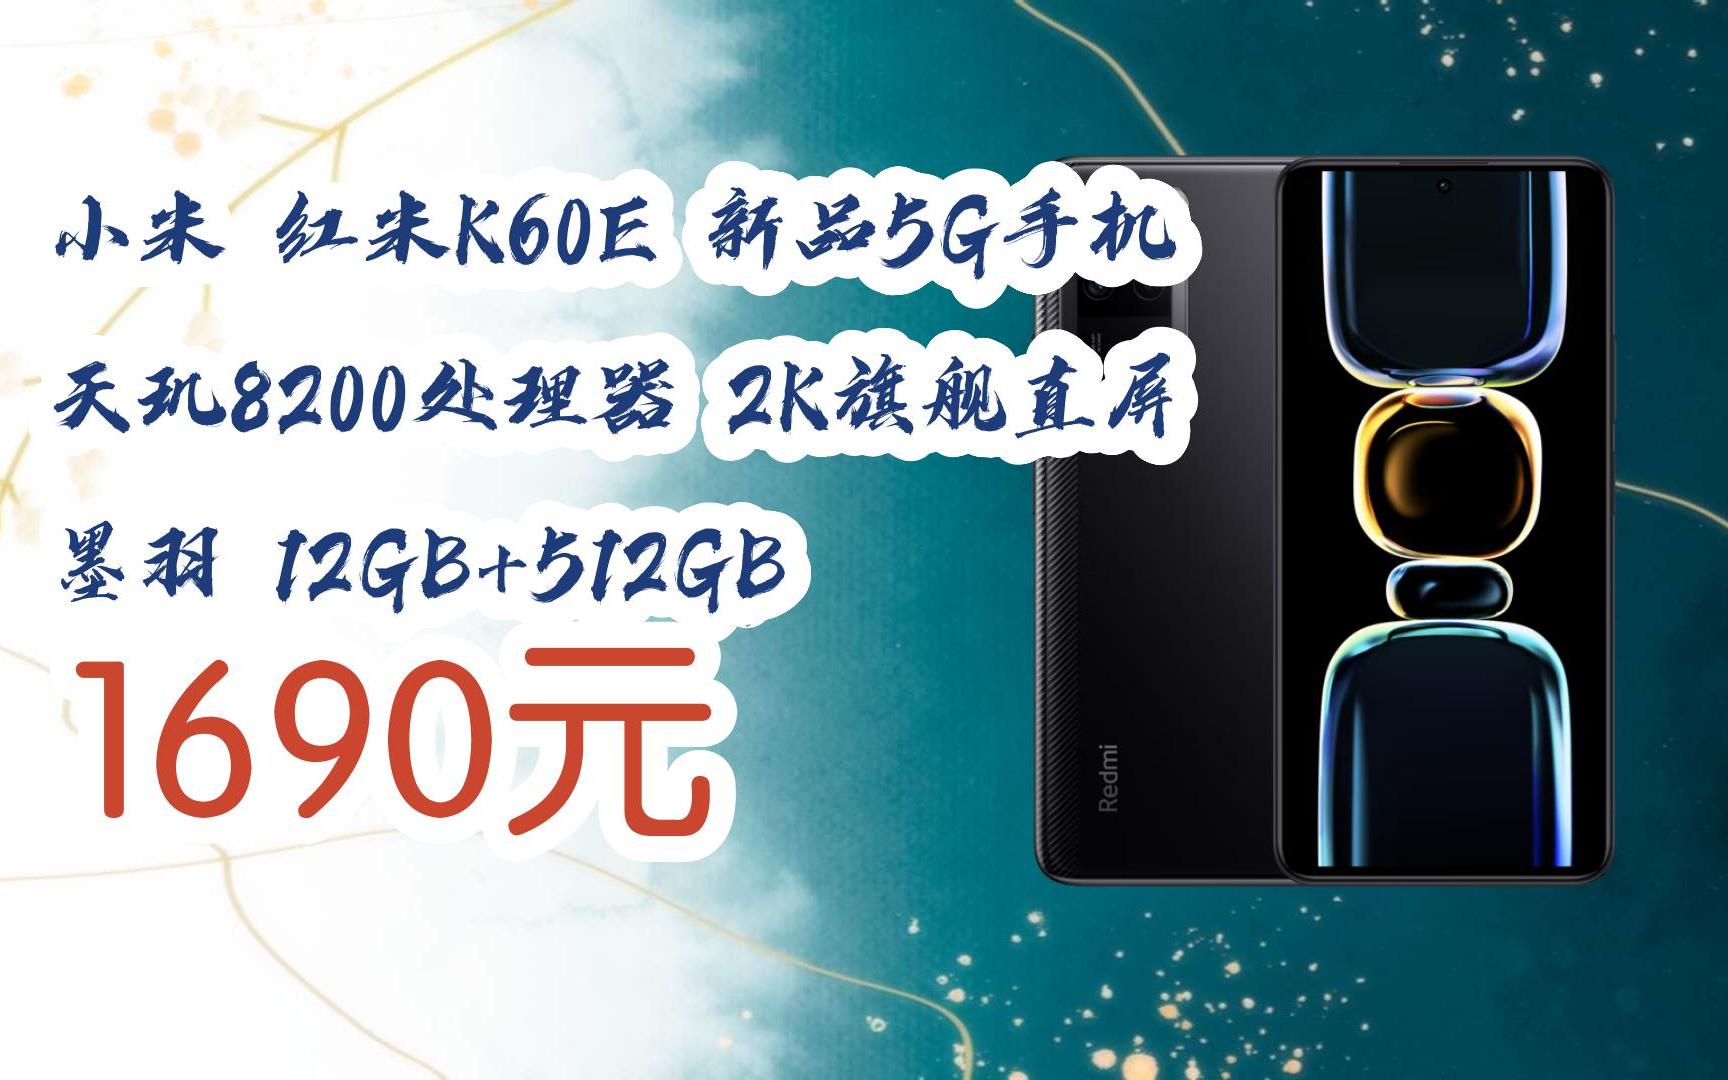 【扫码领取l最新优惠】小米 红米k60e 新品5g手机 天玑8200处理器 2k